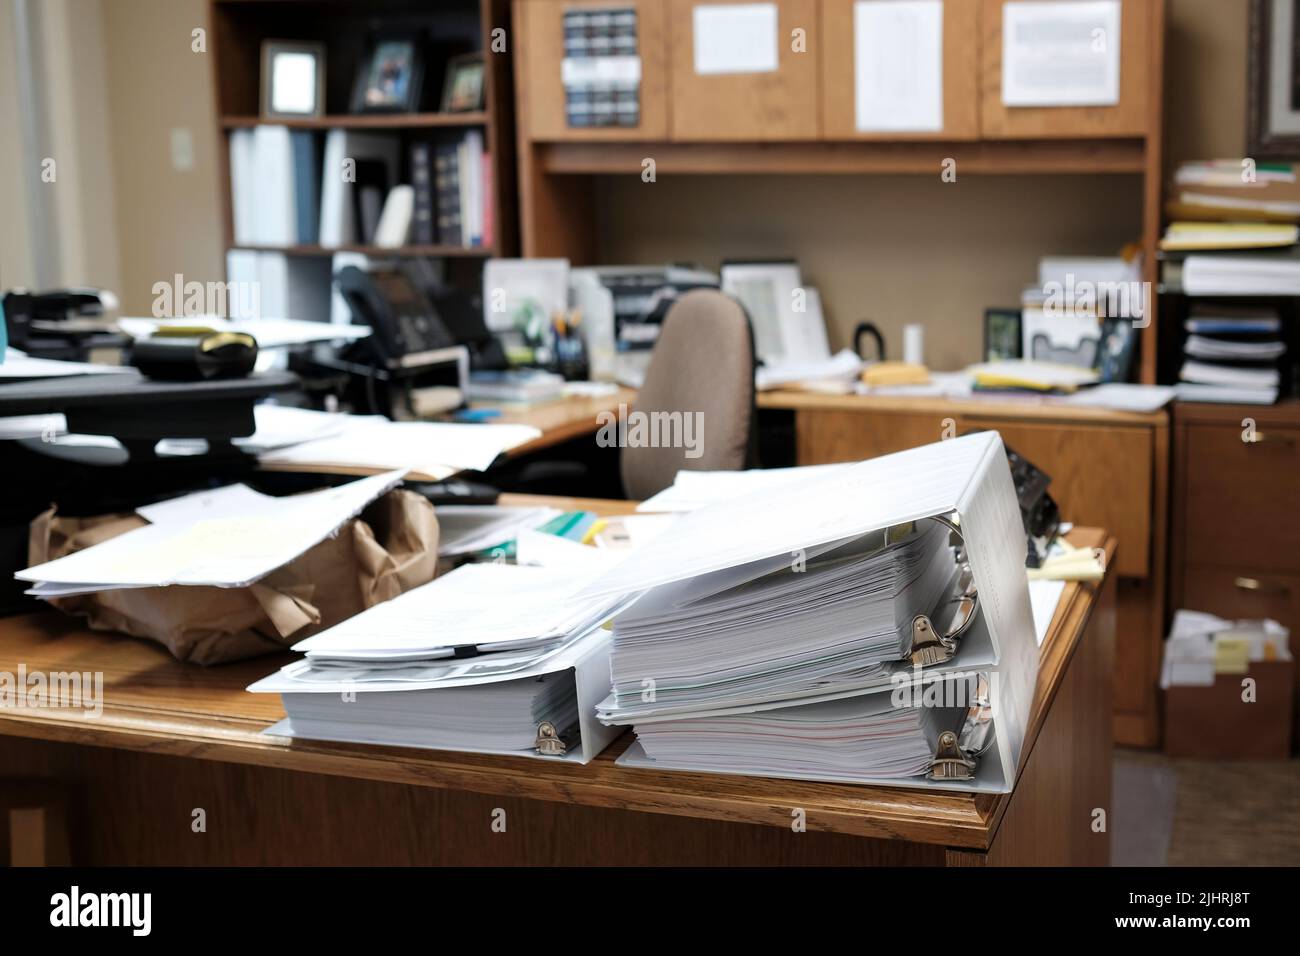 Carpetas en escritorios o estanterías de una oficina para organizar documentos empresariales Foto de stock